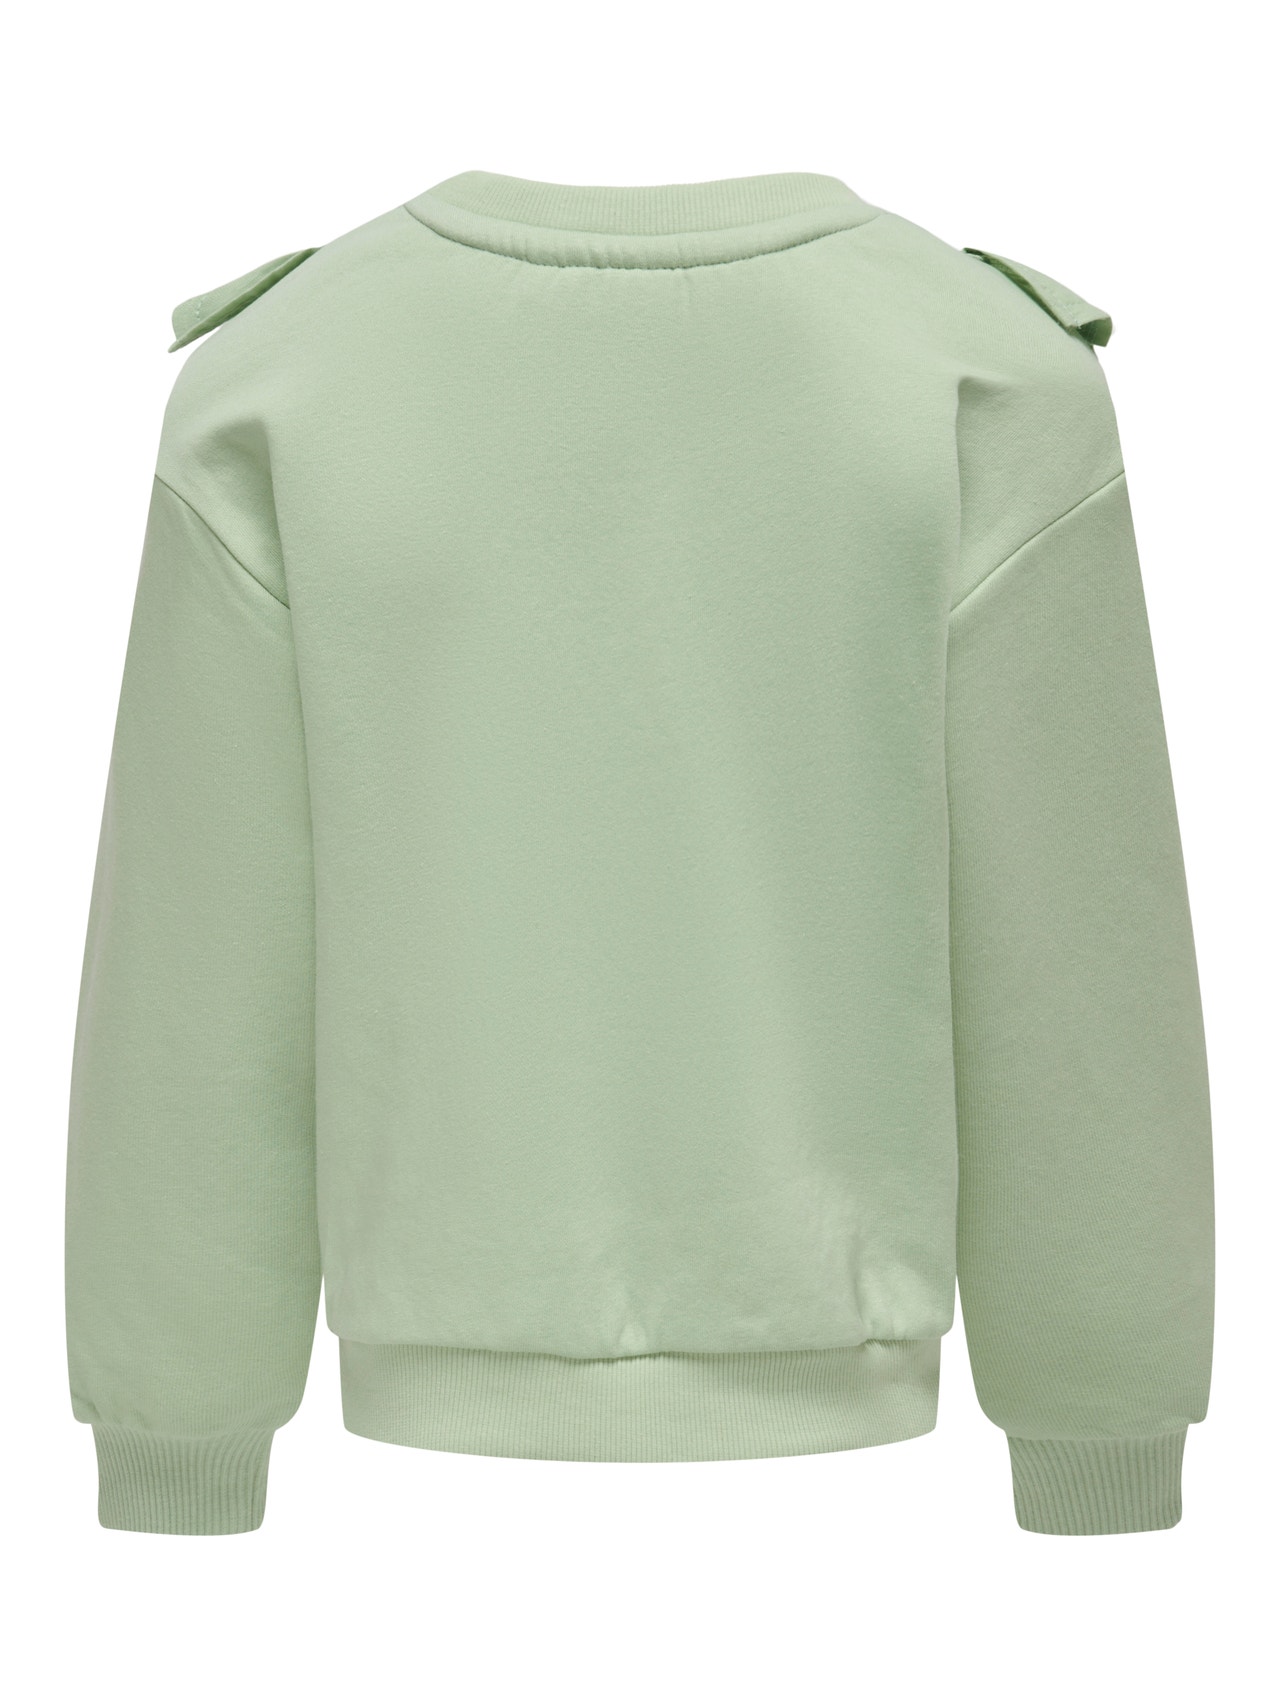 ONLY Sweatshirt med flæsedetalje -Smoke Green - 15283811